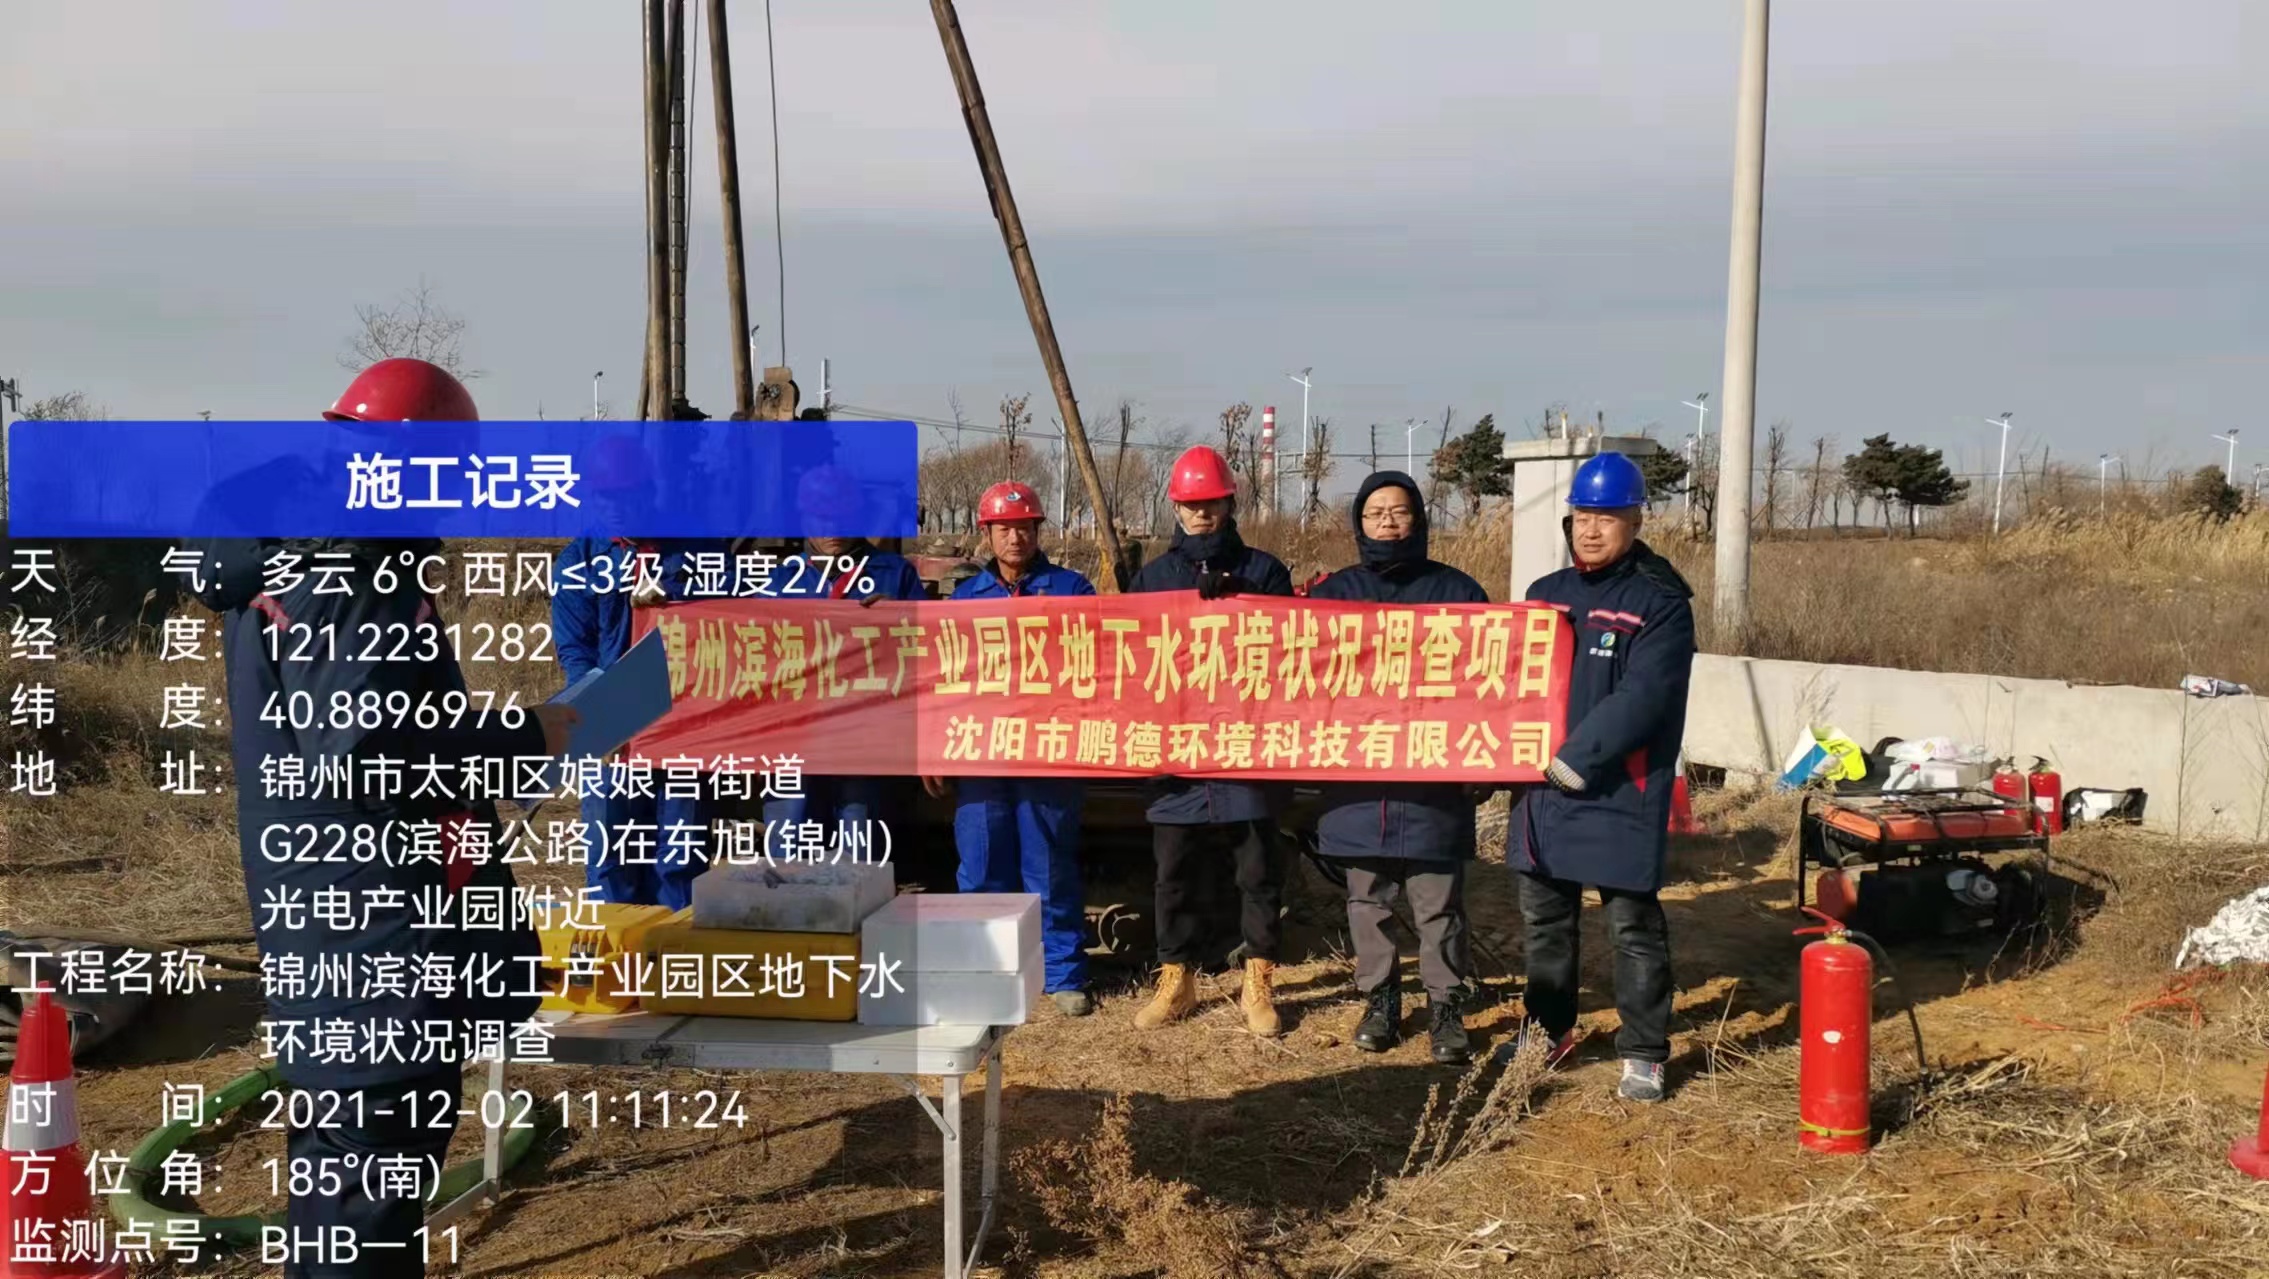 锦州滨海化工产业园区地下水环境状况调查工作正式启动